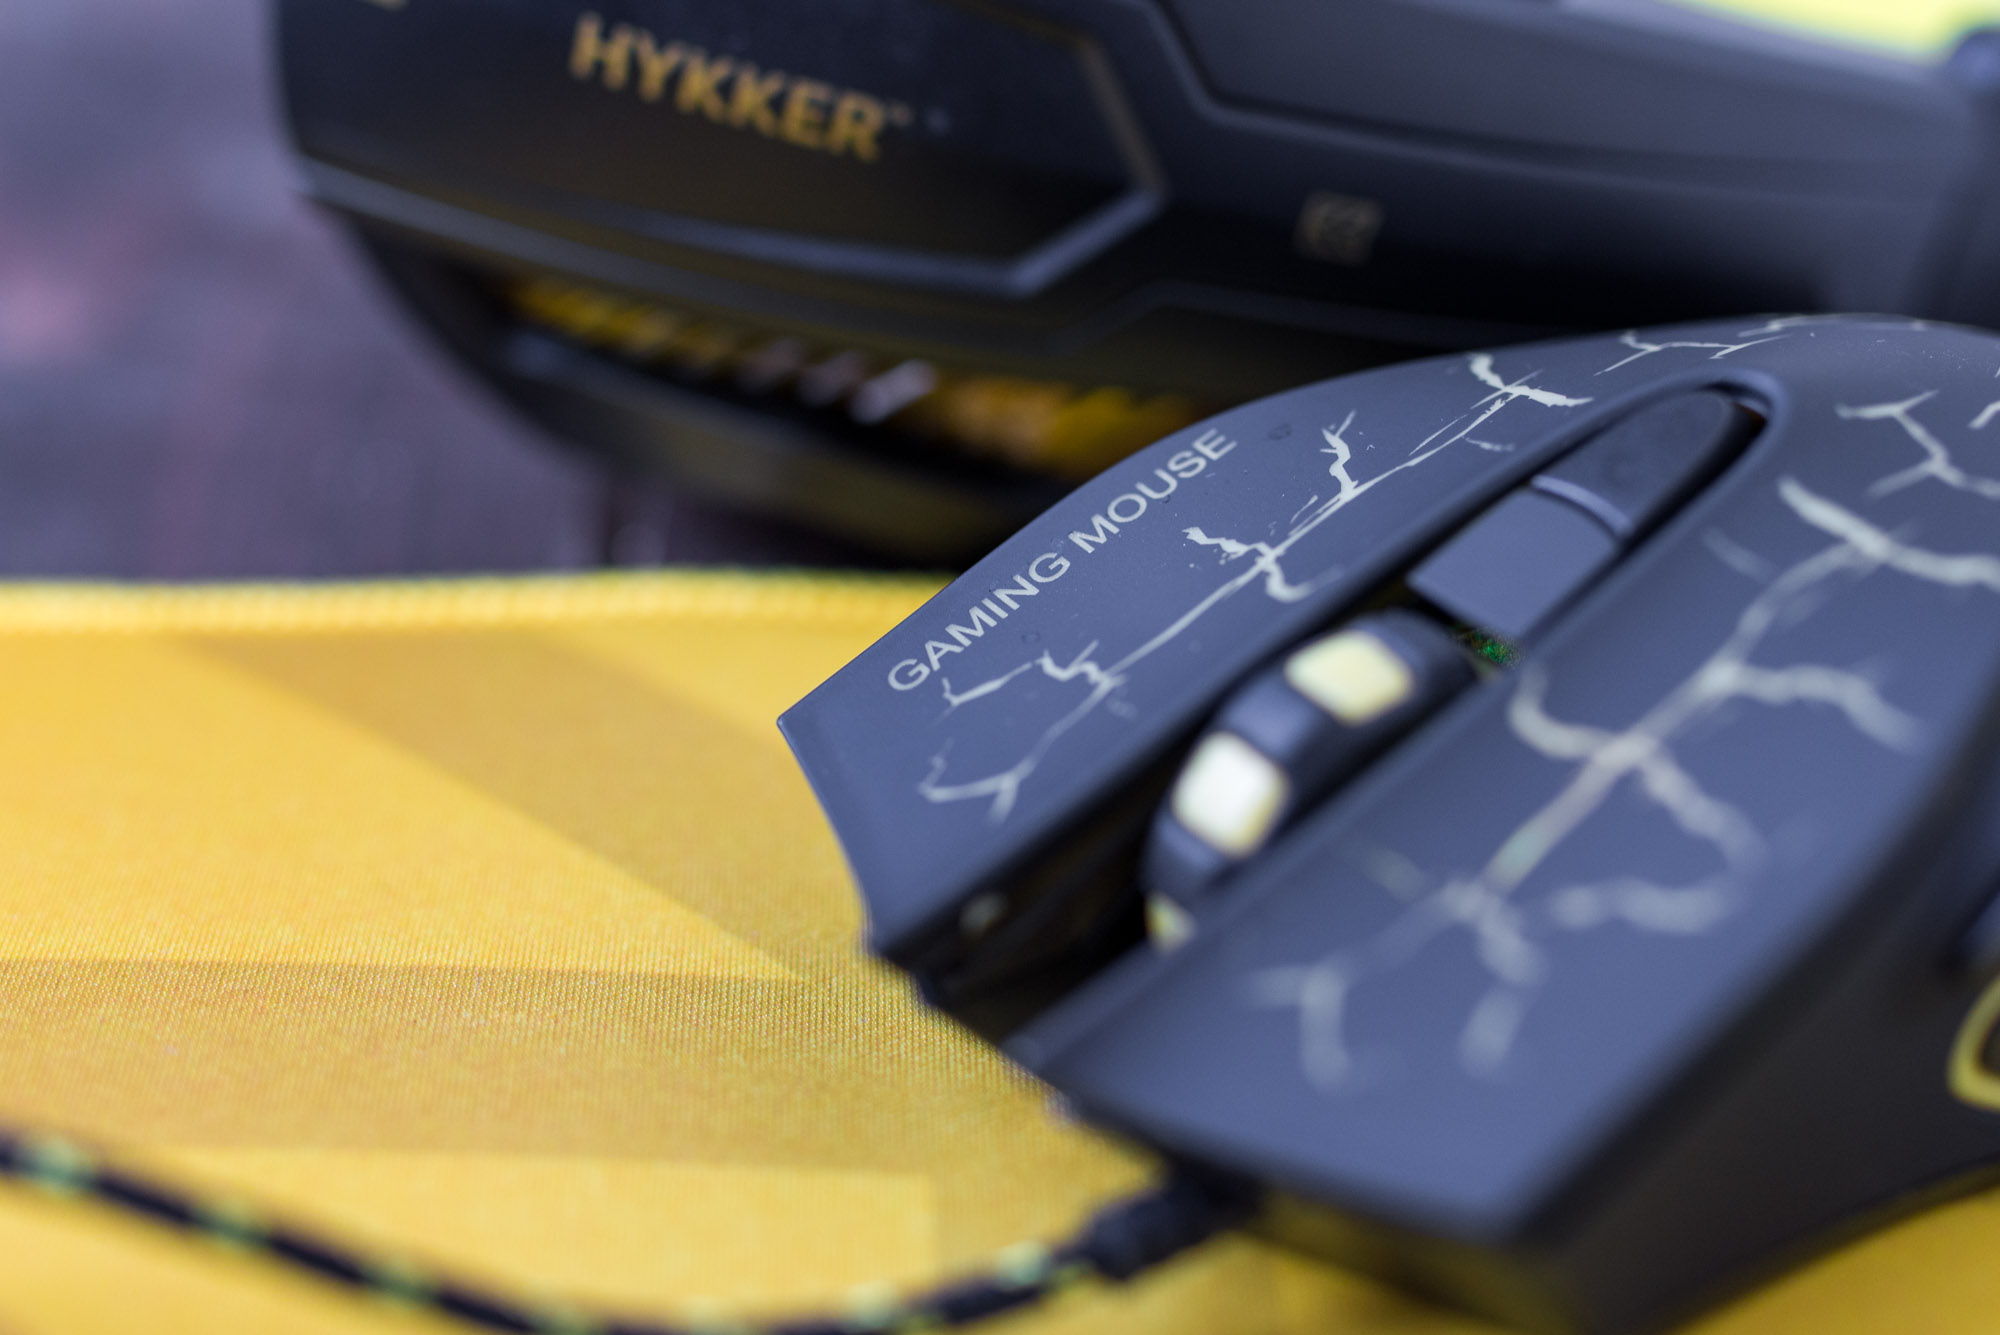 Для тестов комплекта   Hykker Gaming Set XR   поэтому я подошел с оптимизмом, несмотря на то, что всегда придерживался мнения, что экономить на мыши и клавиатуре не стоит - в конце концов, это наиболее часто используемые компьютерные периферийные устройства, в частности мышь